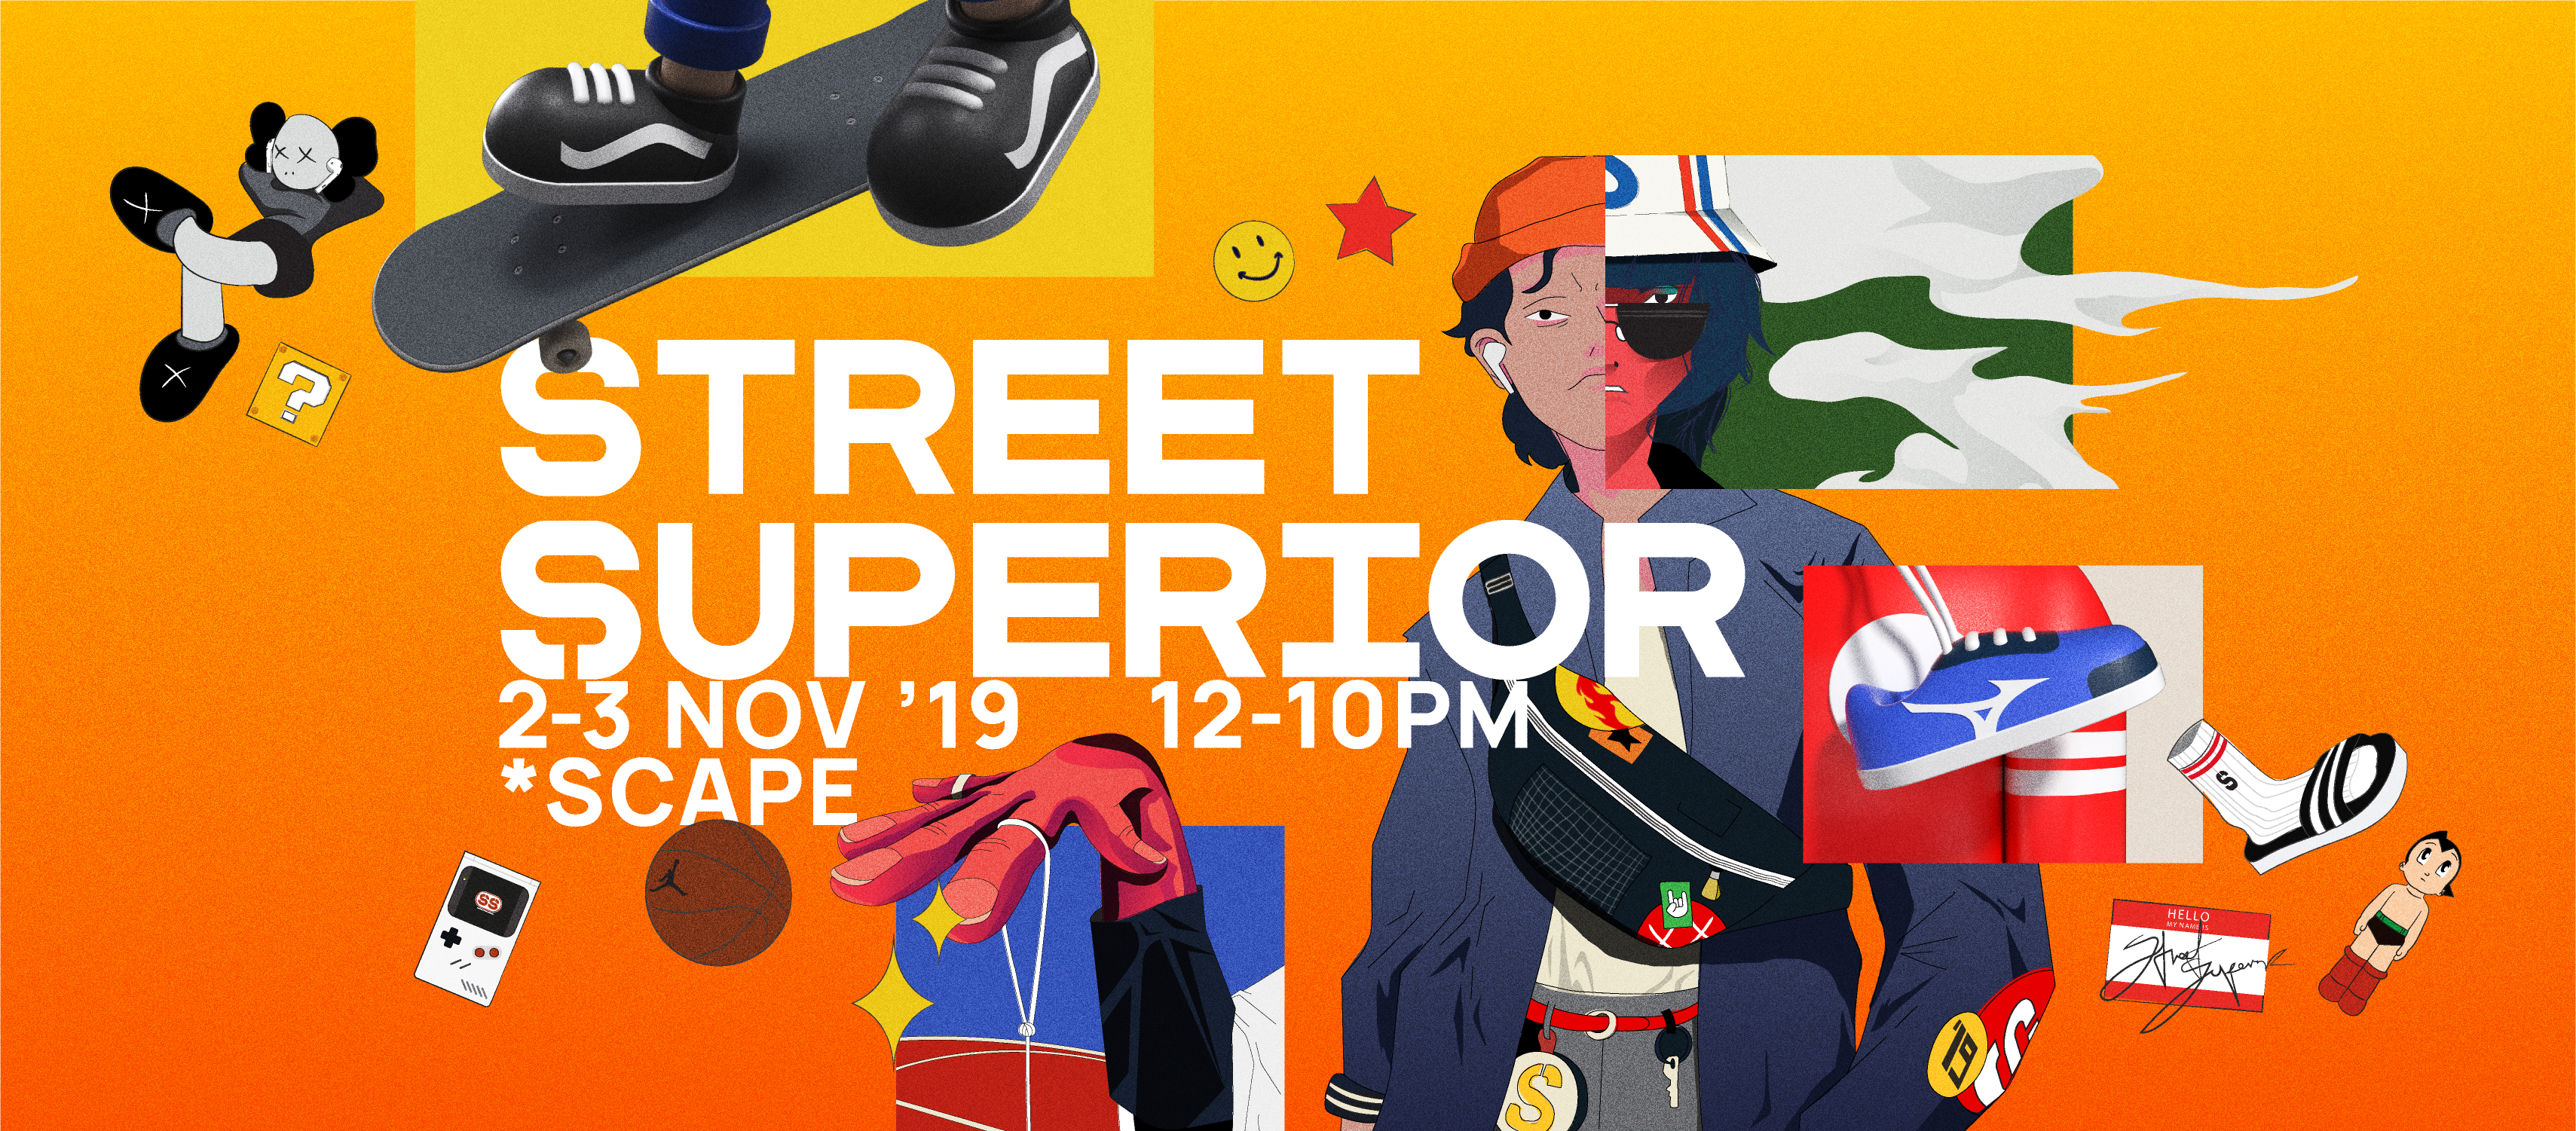 Street Superior Festival Returns From 2-3 November